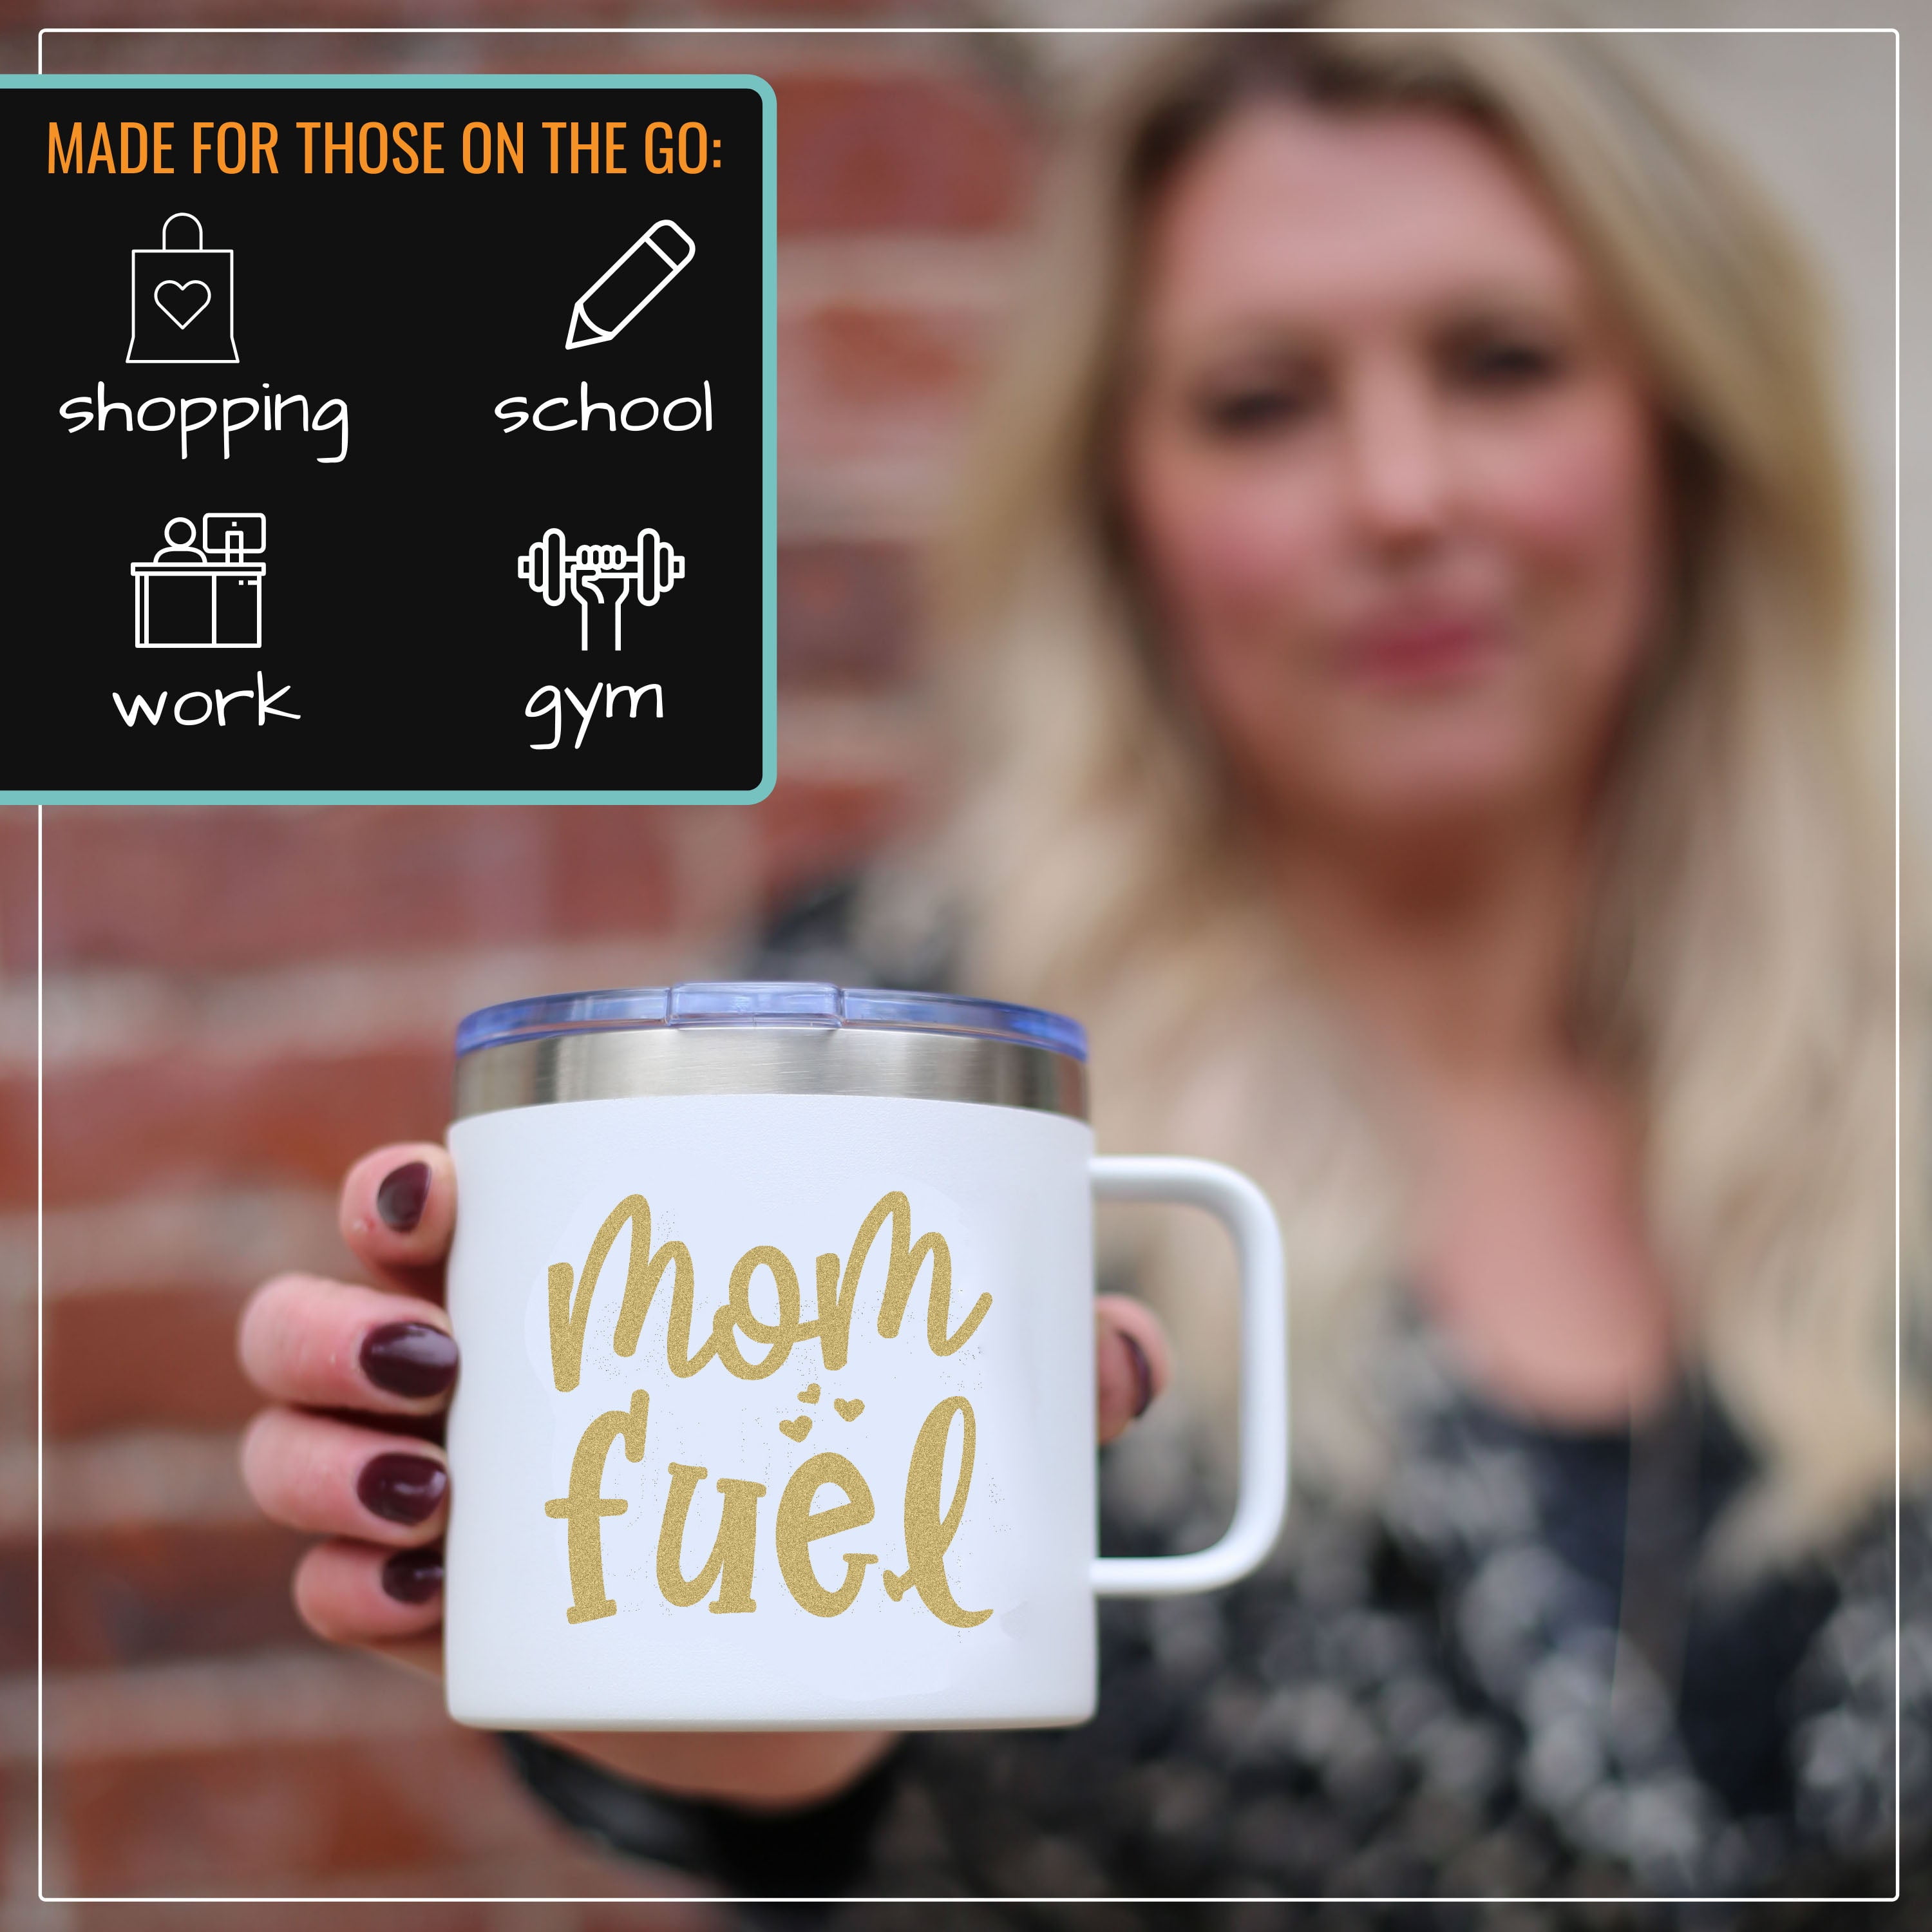 Mom Fuel Mug - A Life Transformed